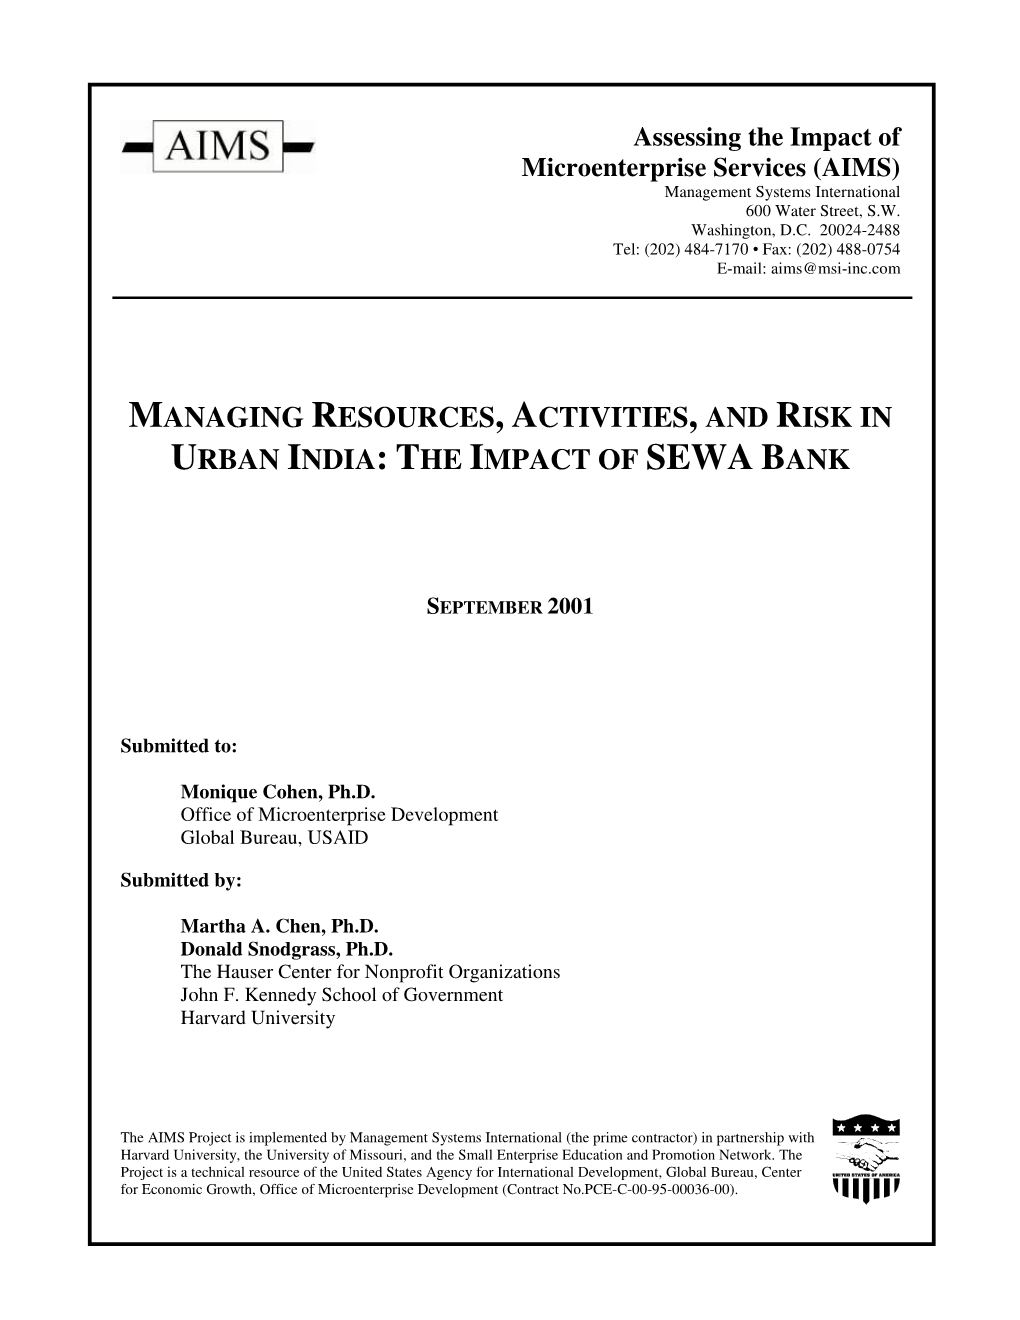 The Impact of Sewa Bank